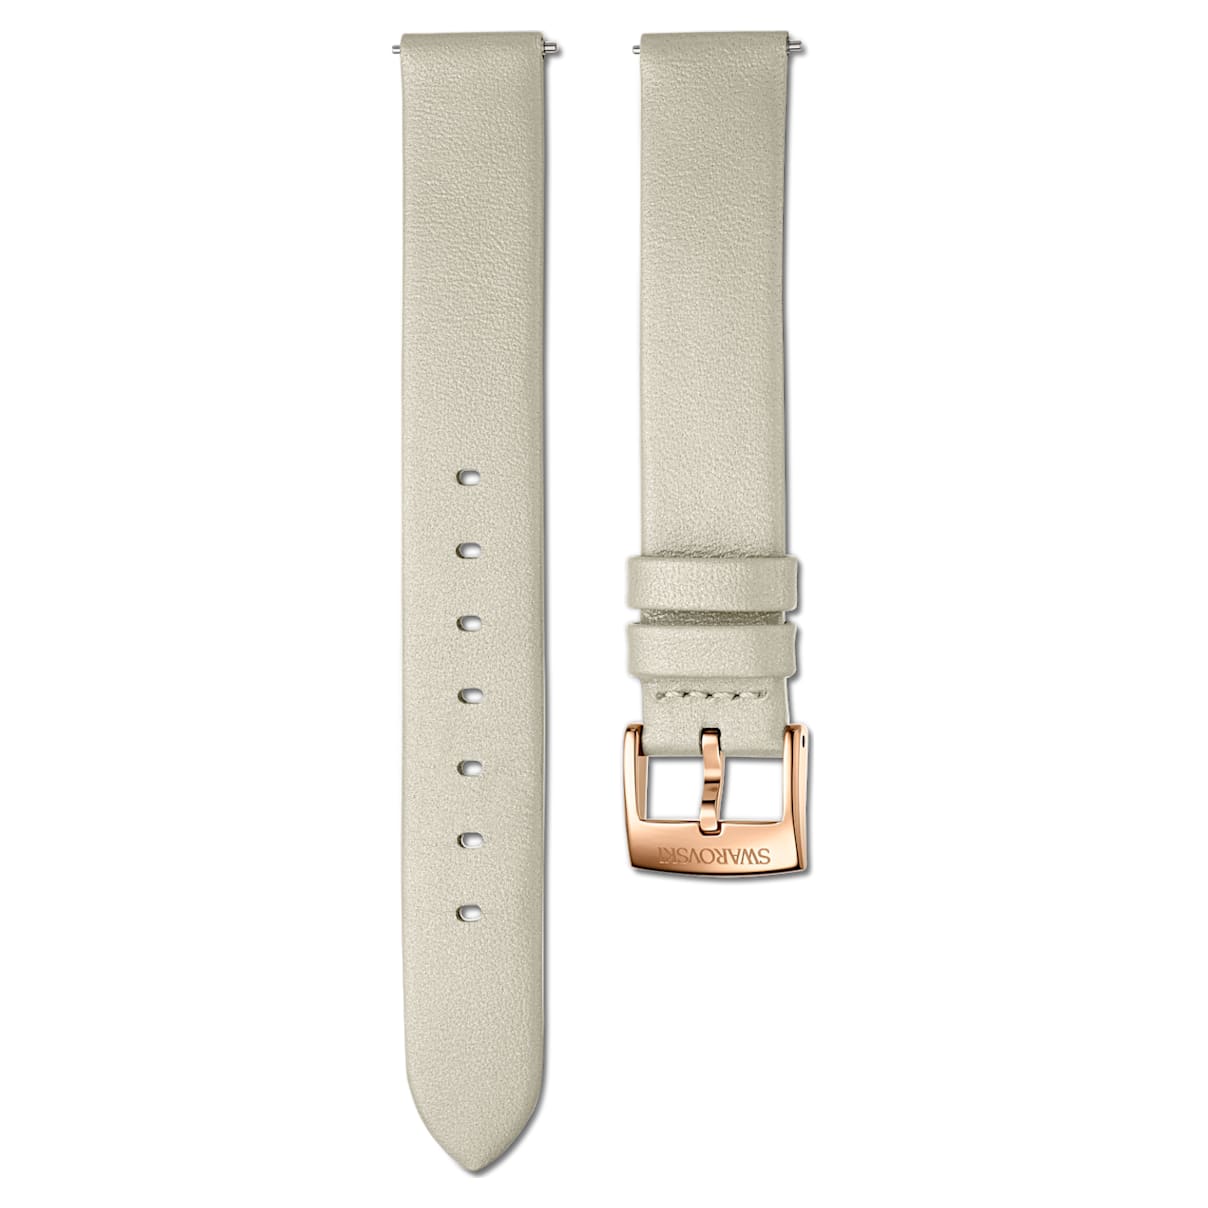 Cinturino per orologio 14mm, Pelle, grigio talpa, PVD oro rosa